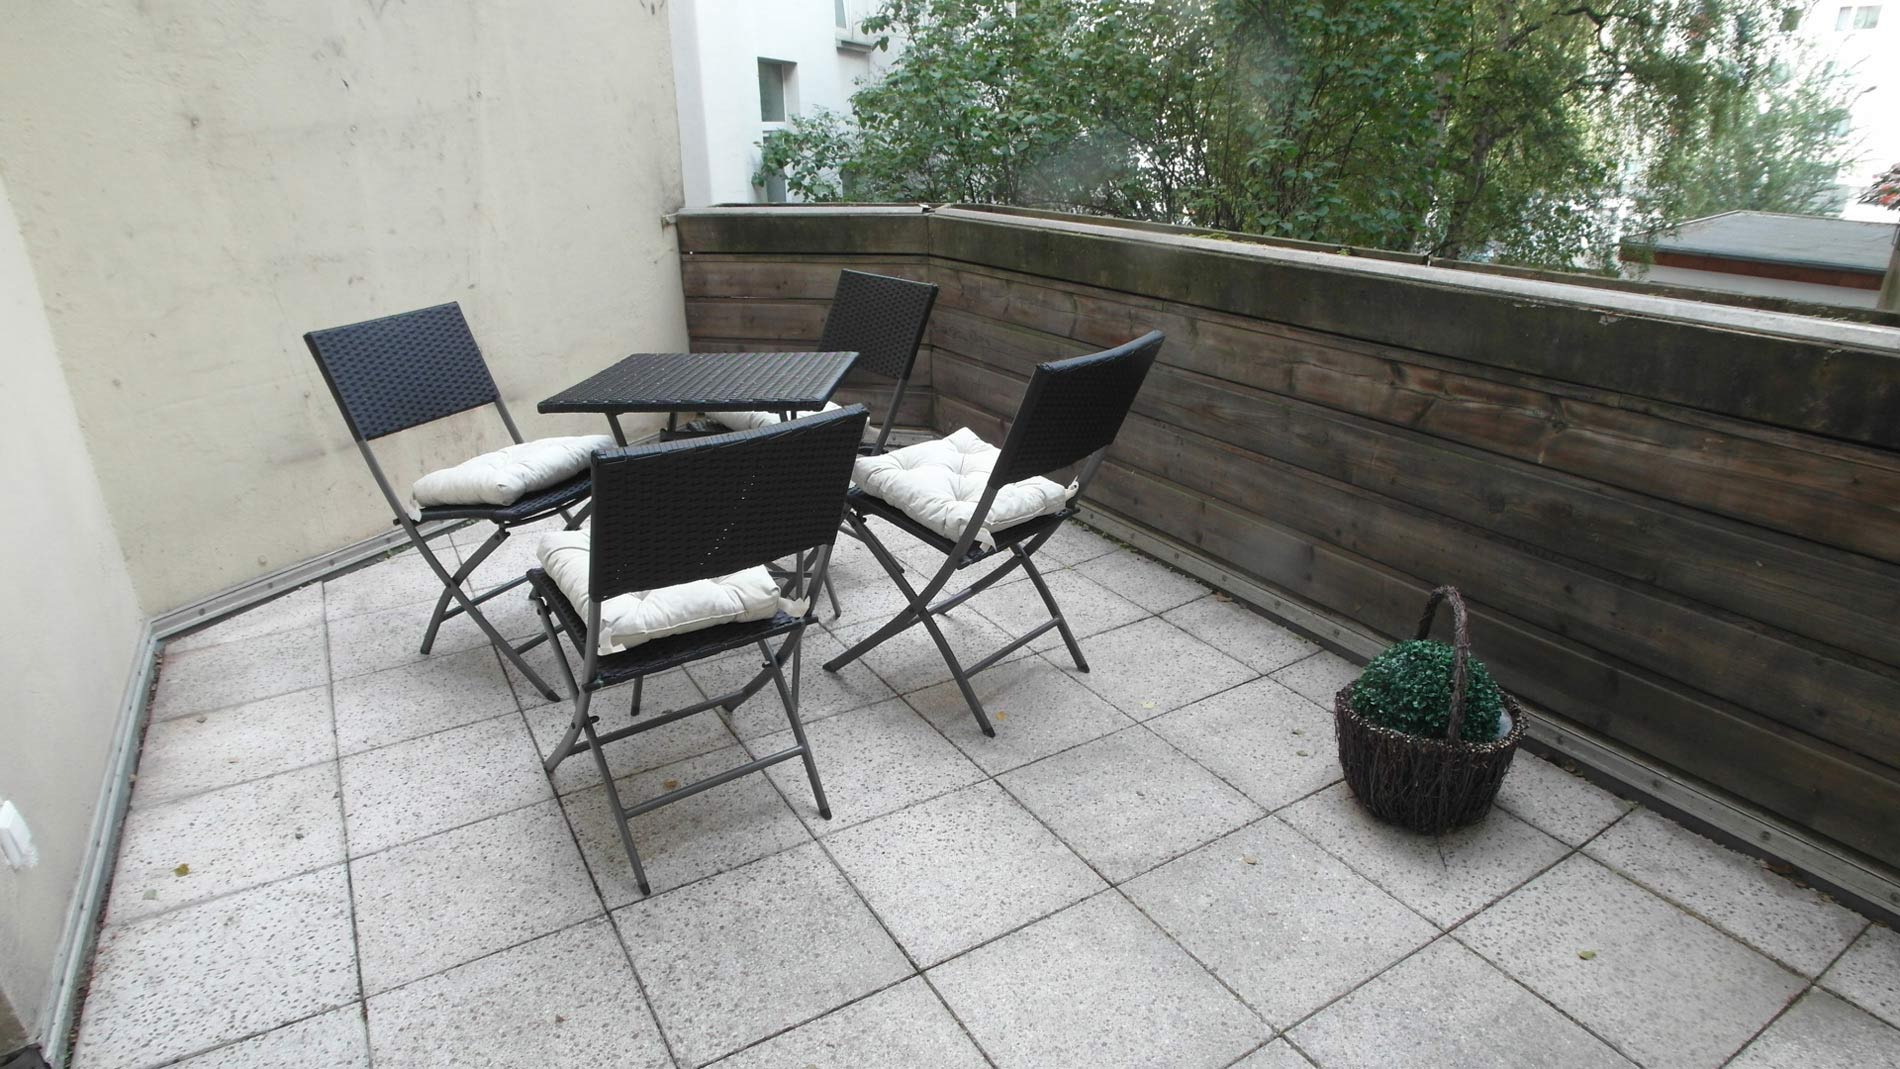 Balkon mit hellen Steinplatten und anthrazitfarbenen Gartenmöbeln